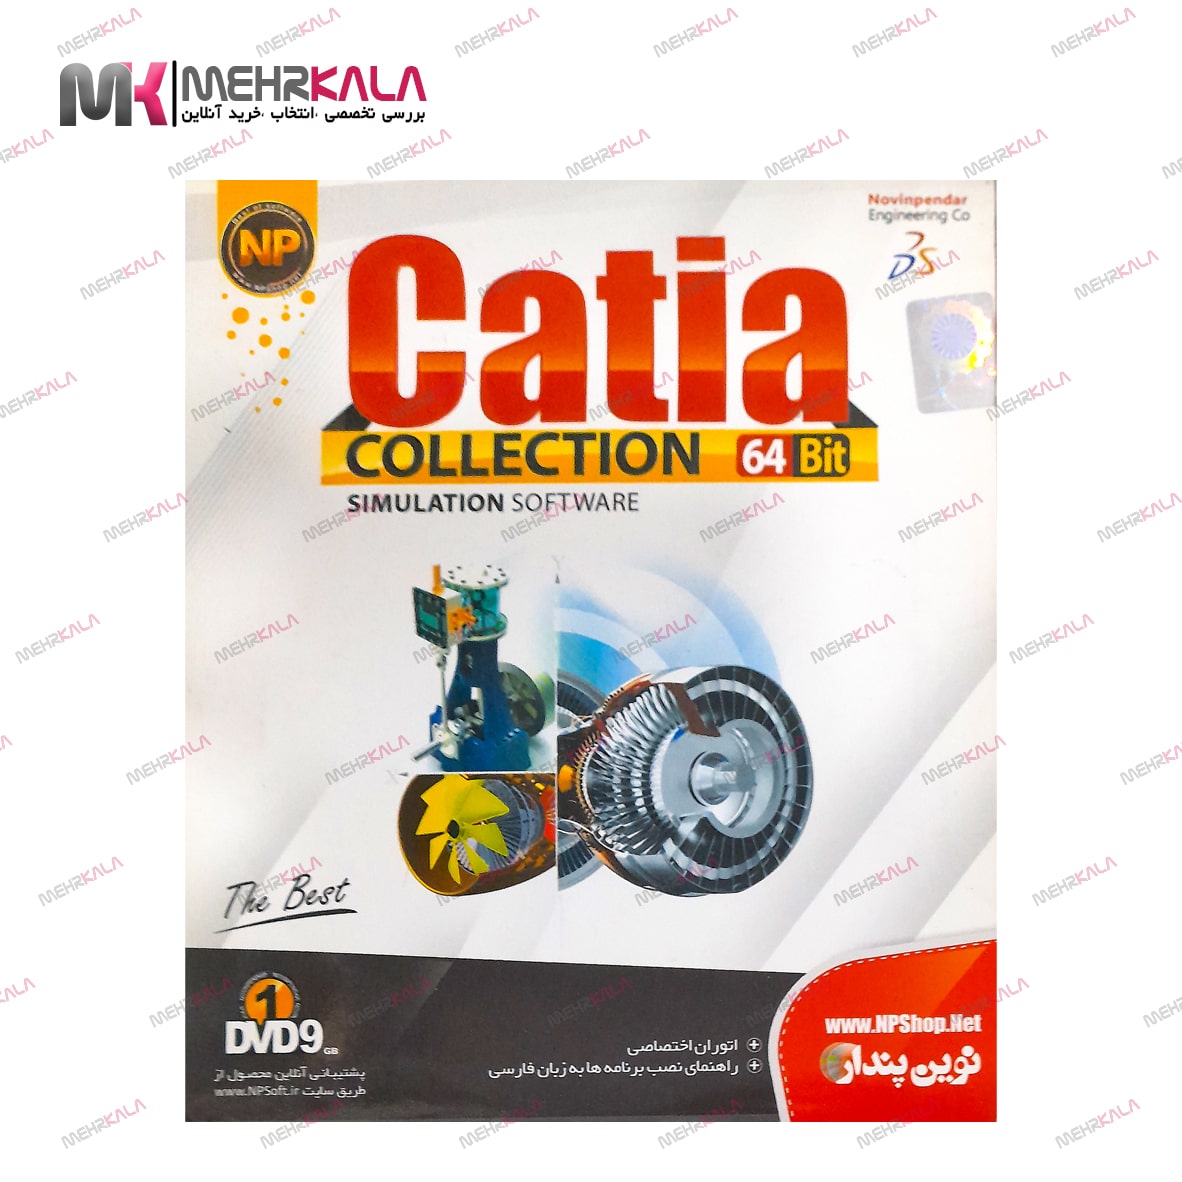 Collection Catia 2013 | مجوعه کاتیا 2013 (نوین پندار)